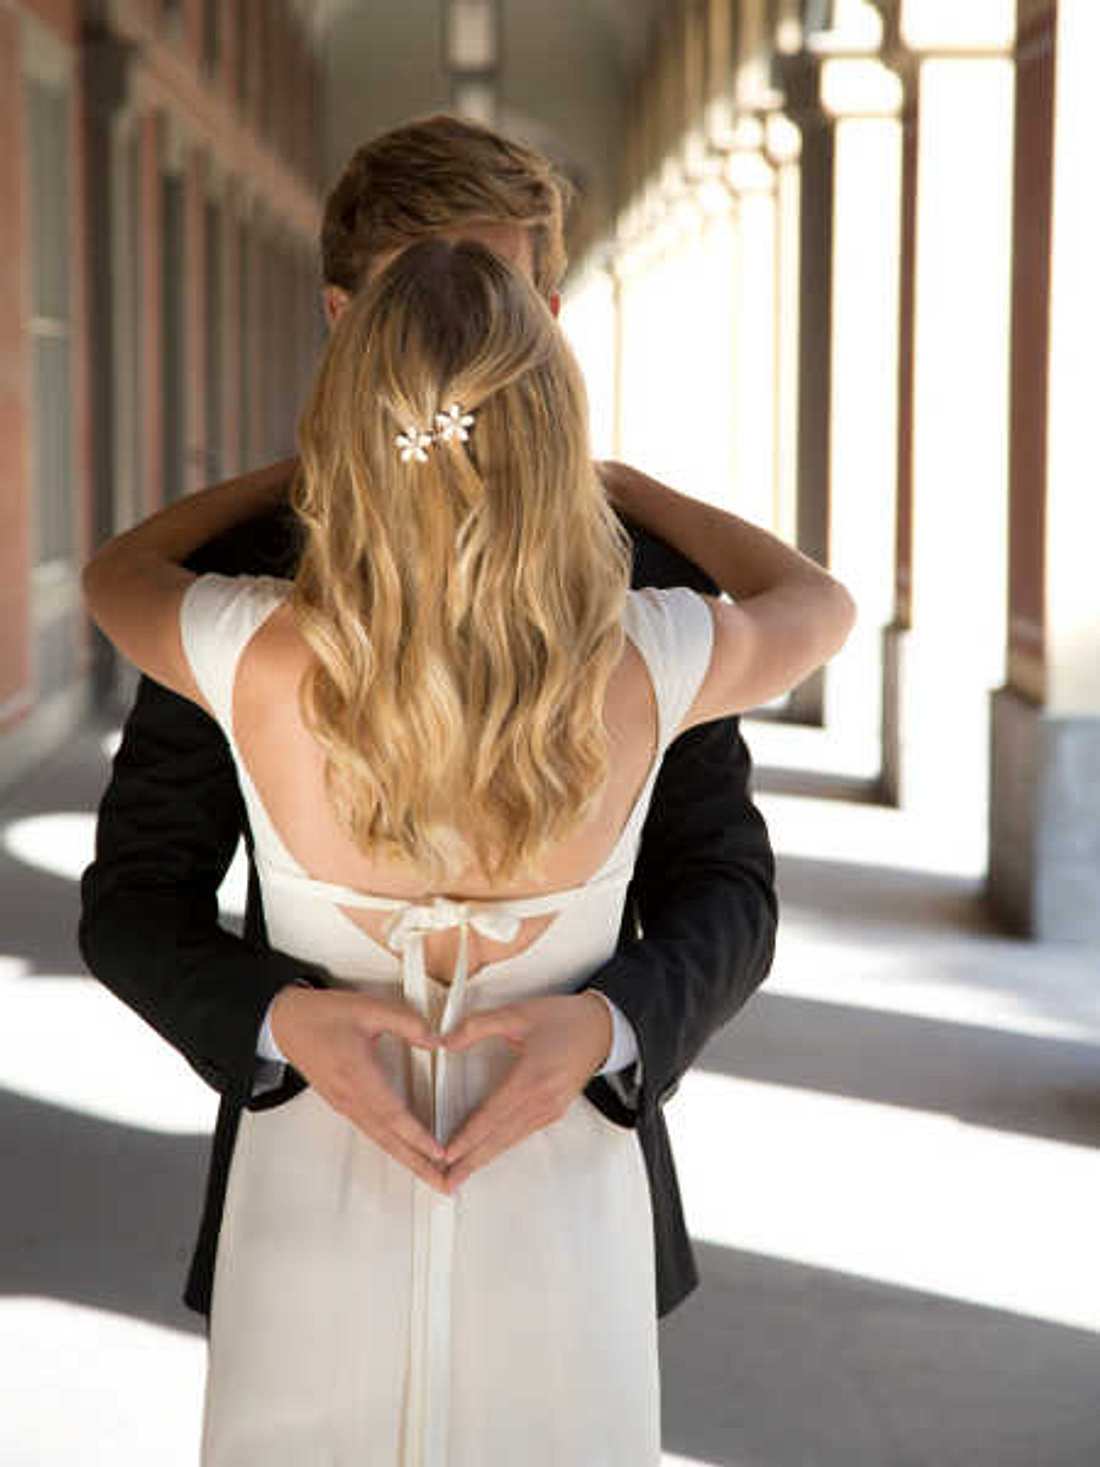 Hochzeit auf den ersten Blick: Wenn Fremde heiraten!